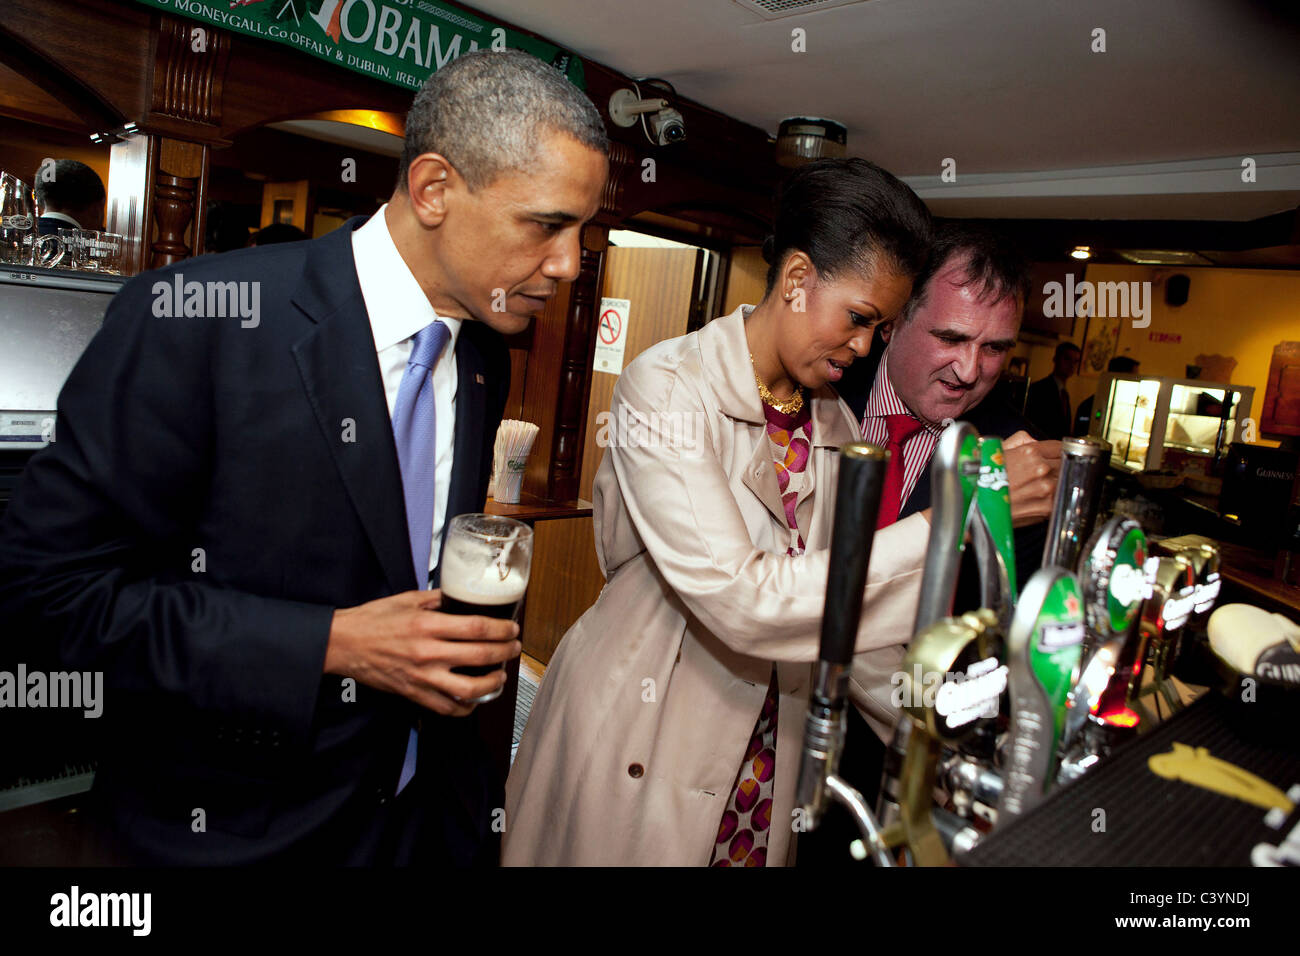 Le président Barack Obama observe alors que la Première Dame Michelle Obama dessine une pinte au pub Ollie Hayes' à Moneygall, l'Irlande, le 23 mai, 2011 Banque D'Images